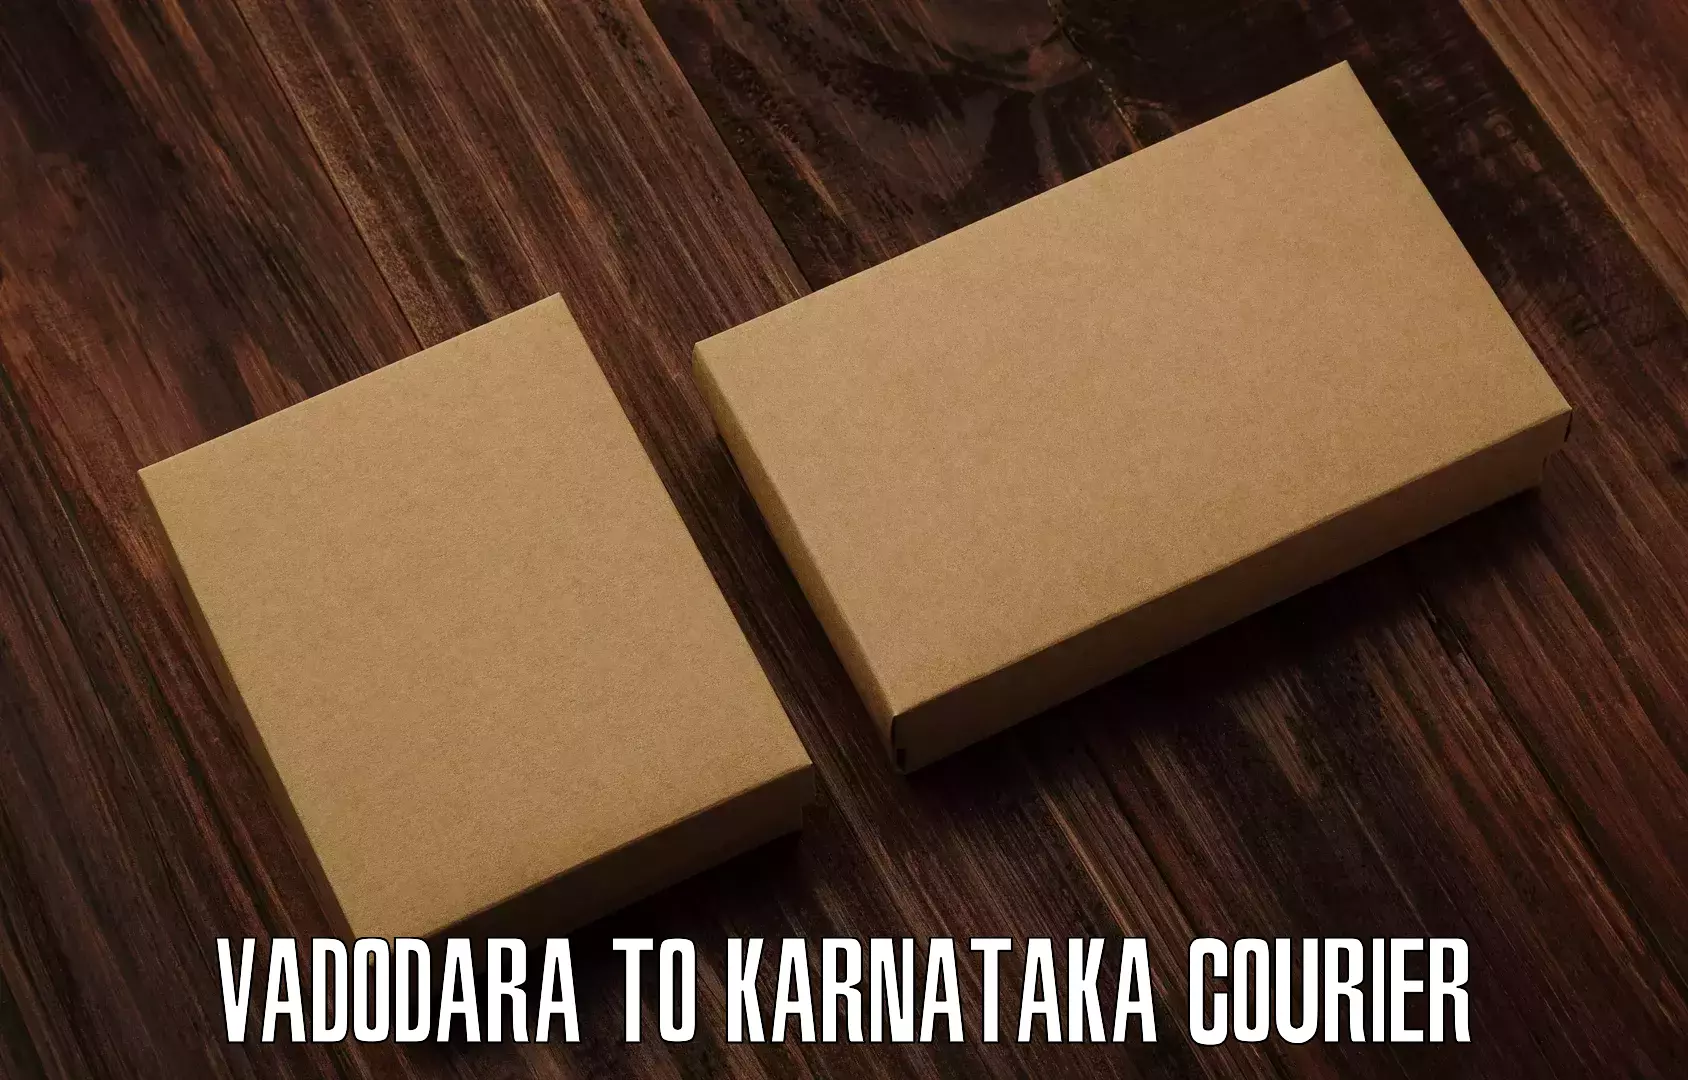 On-demand courier Vadodara to Karkala